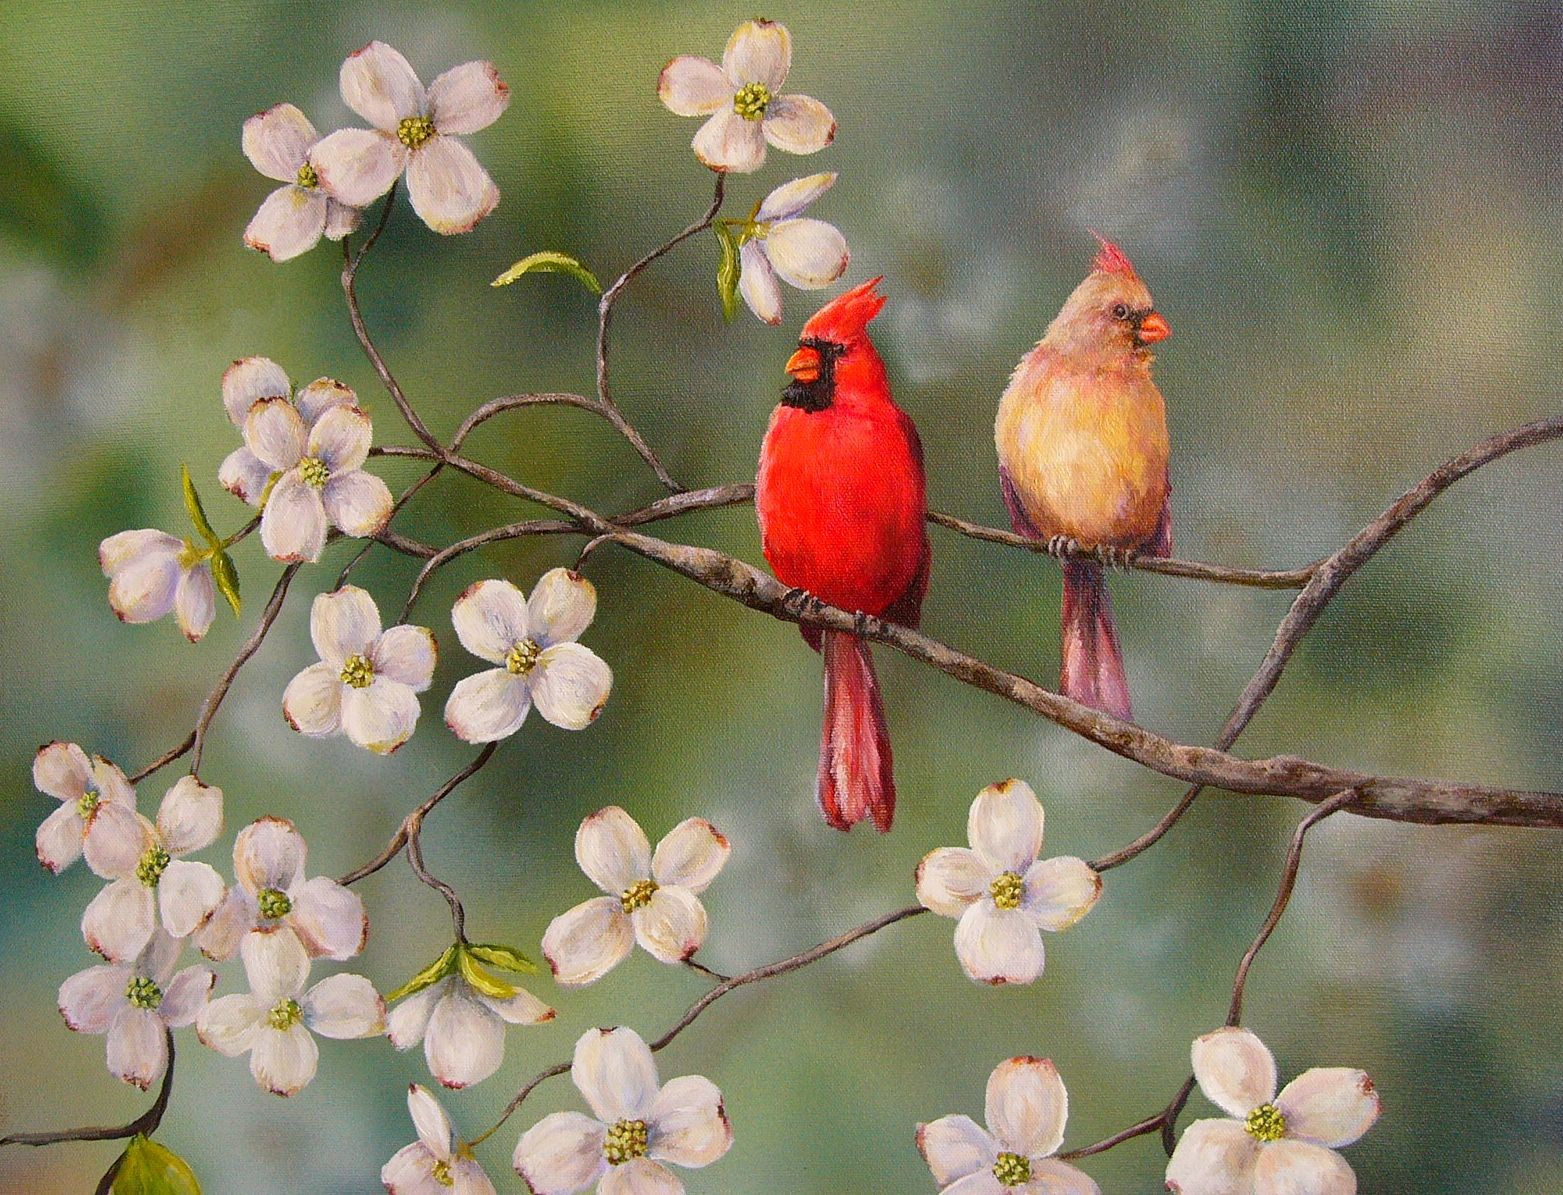  cardinalscardinal birdflying cardinalsweet cardinalsred cardinal 1563x1195